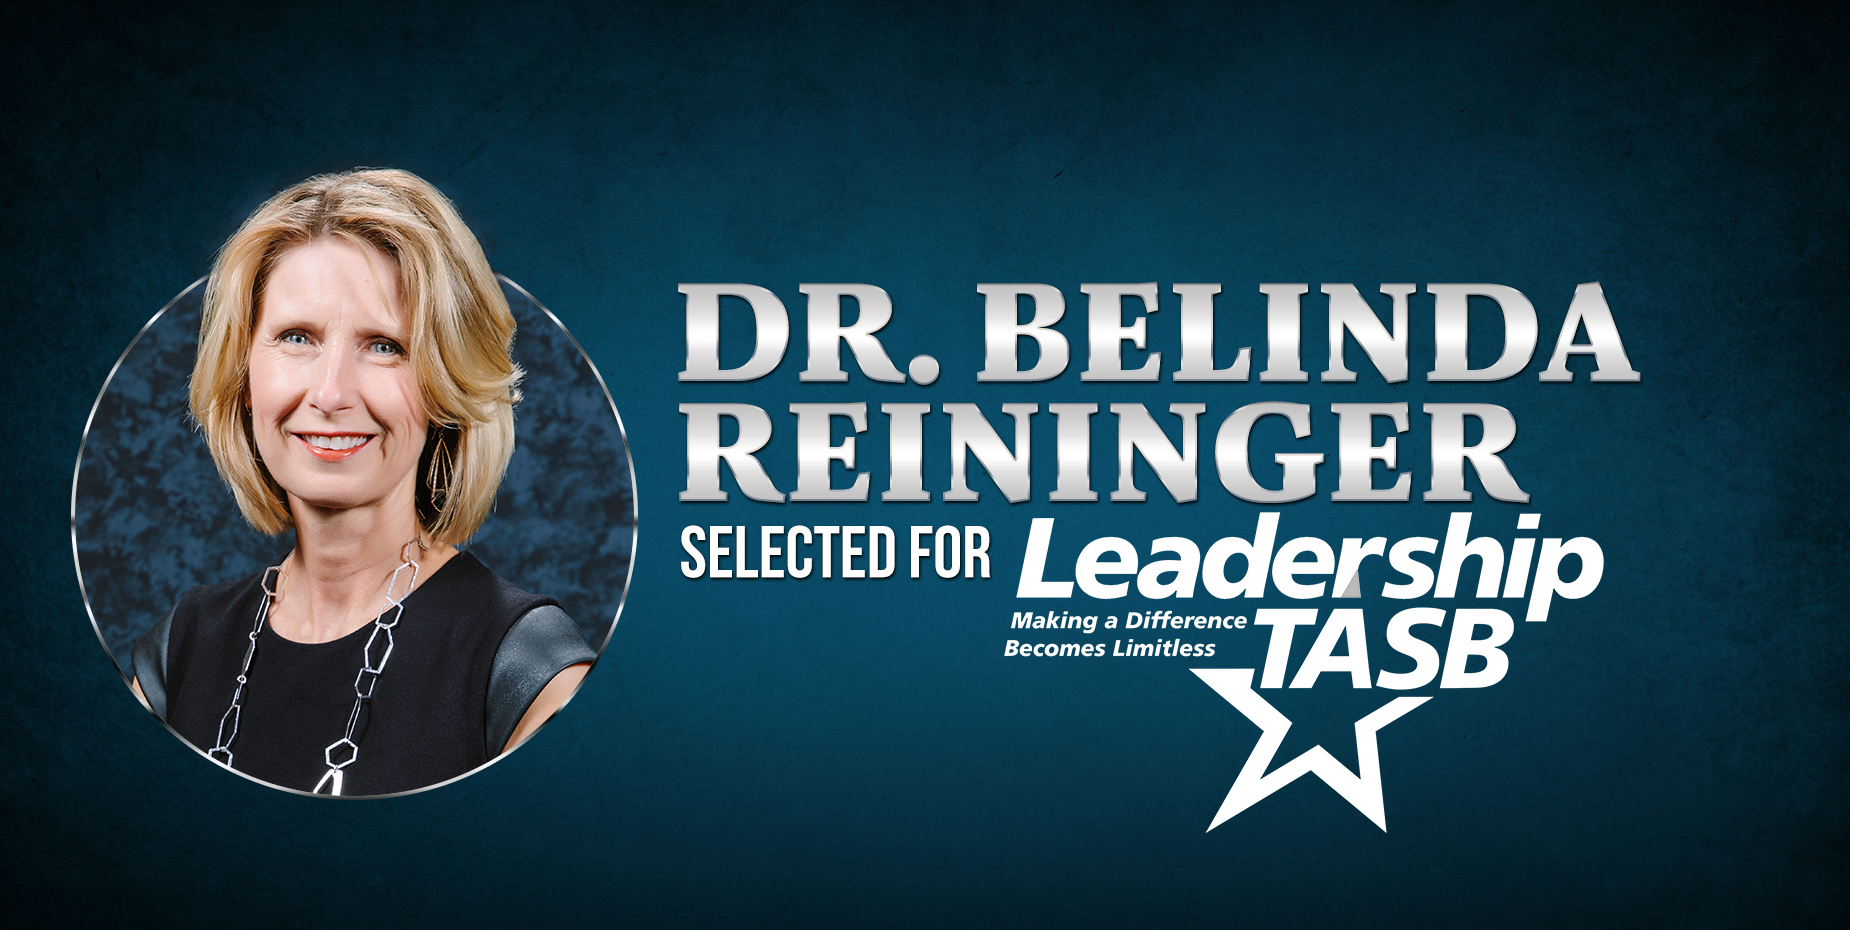 Dr. Belinda Reininger selected for Leadership TASB